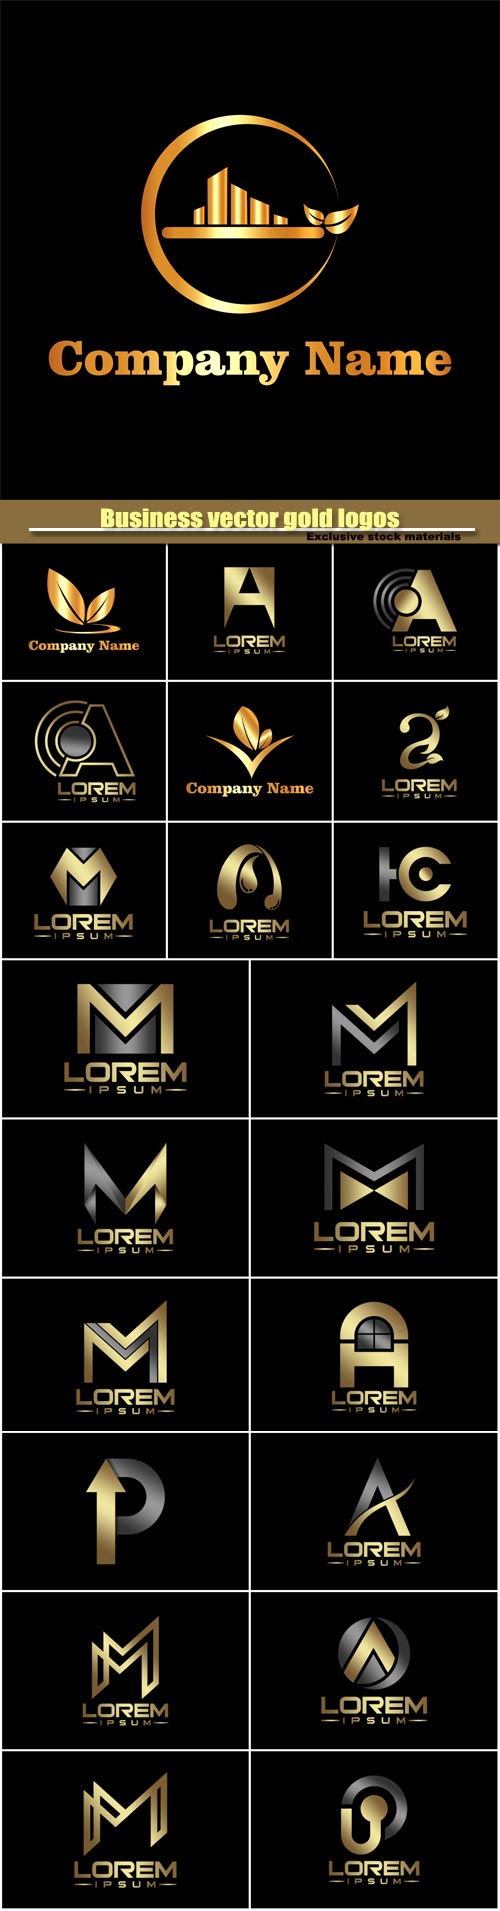 Business vector gold logos templates, creative figure icon